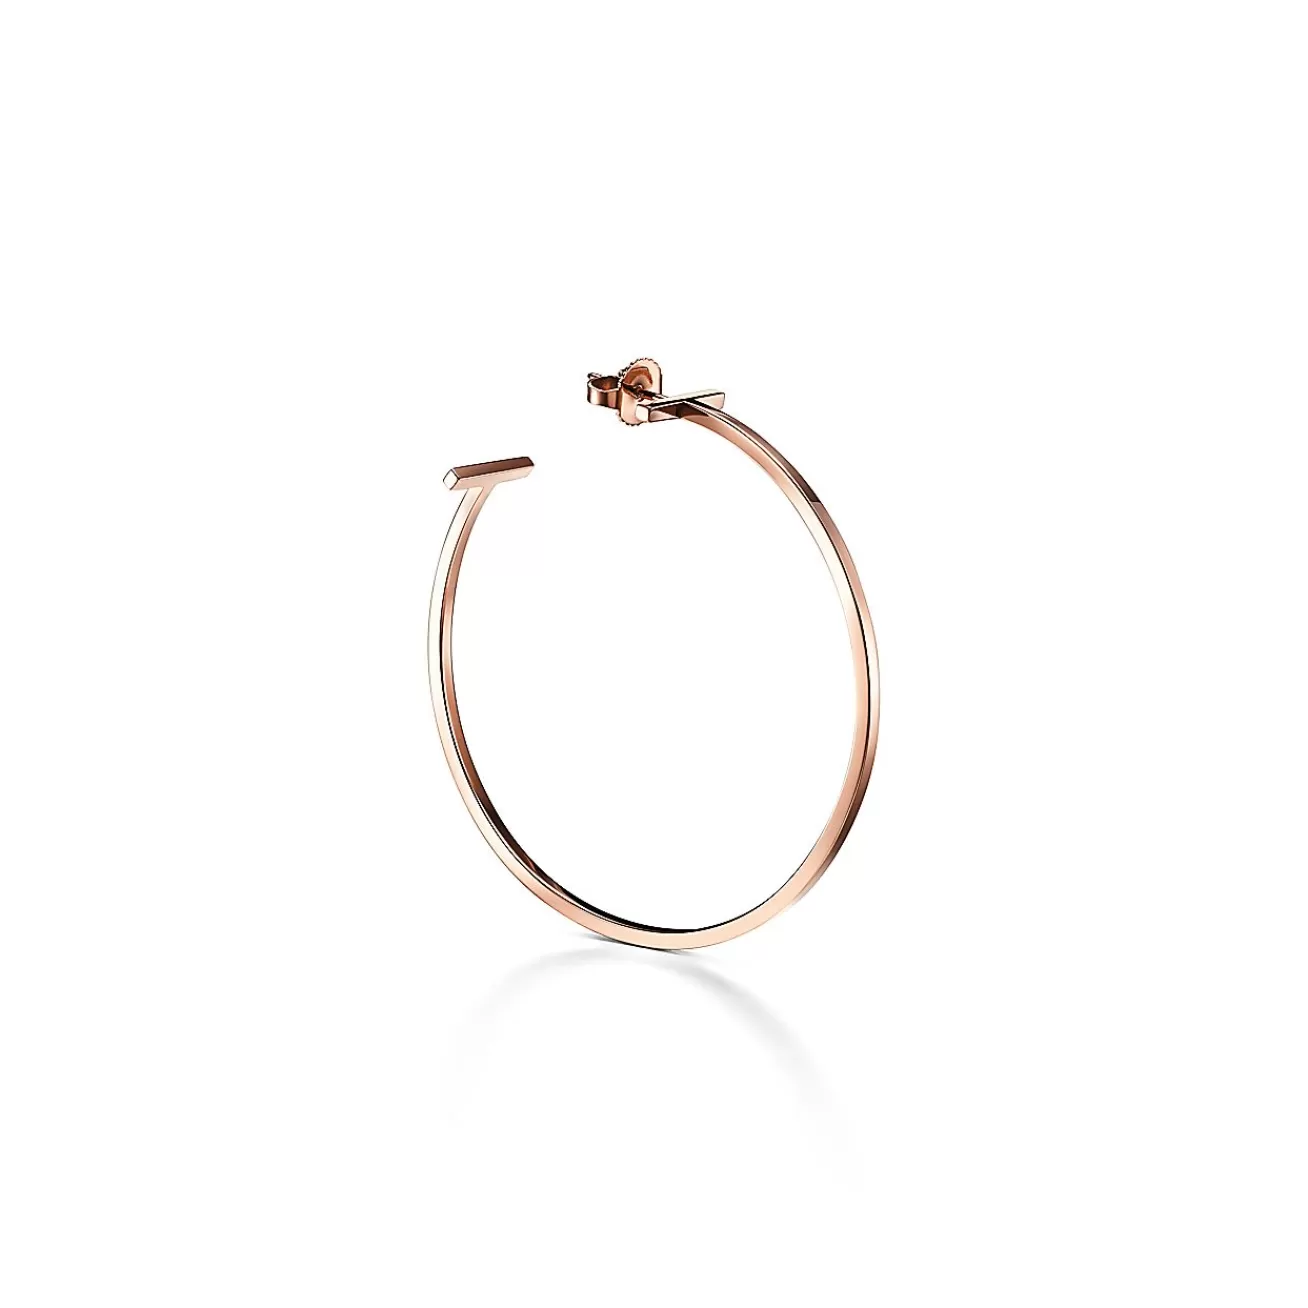 Tiffany & Co. Tiffany T wire hoop earrings in 18k rose gold, extra large. | ^ Earrings | Hoop Earrings